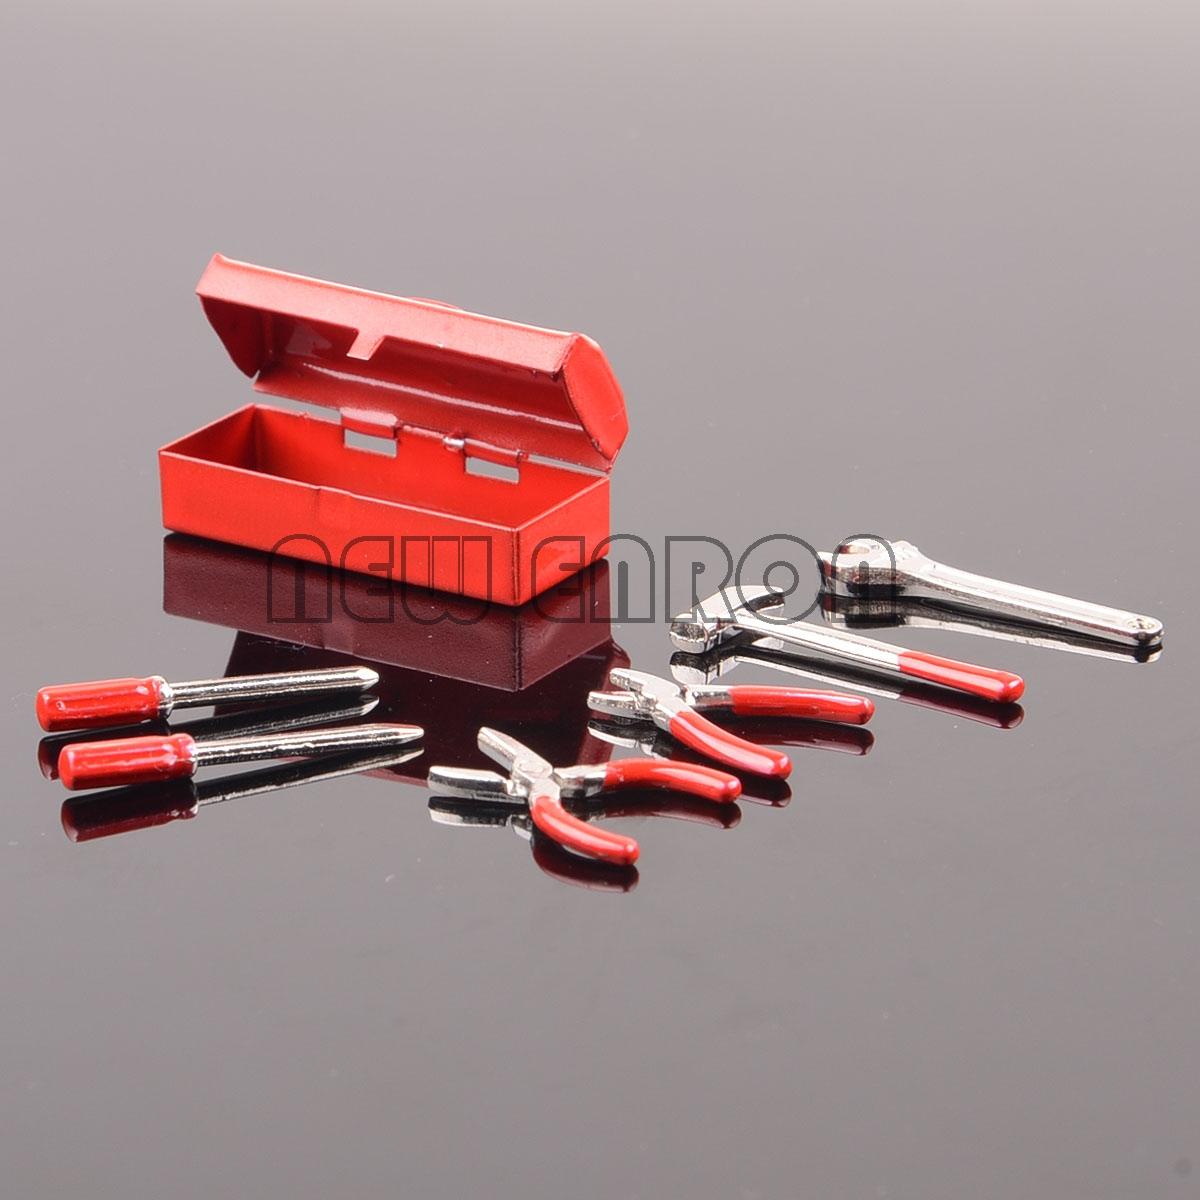 Изображение товара: Новый красный гаечный ключ ENRON, молоток, отвертка, ящик для инструментов для RC 1:10 SCX10 CC01 AX10 Rock Crawler